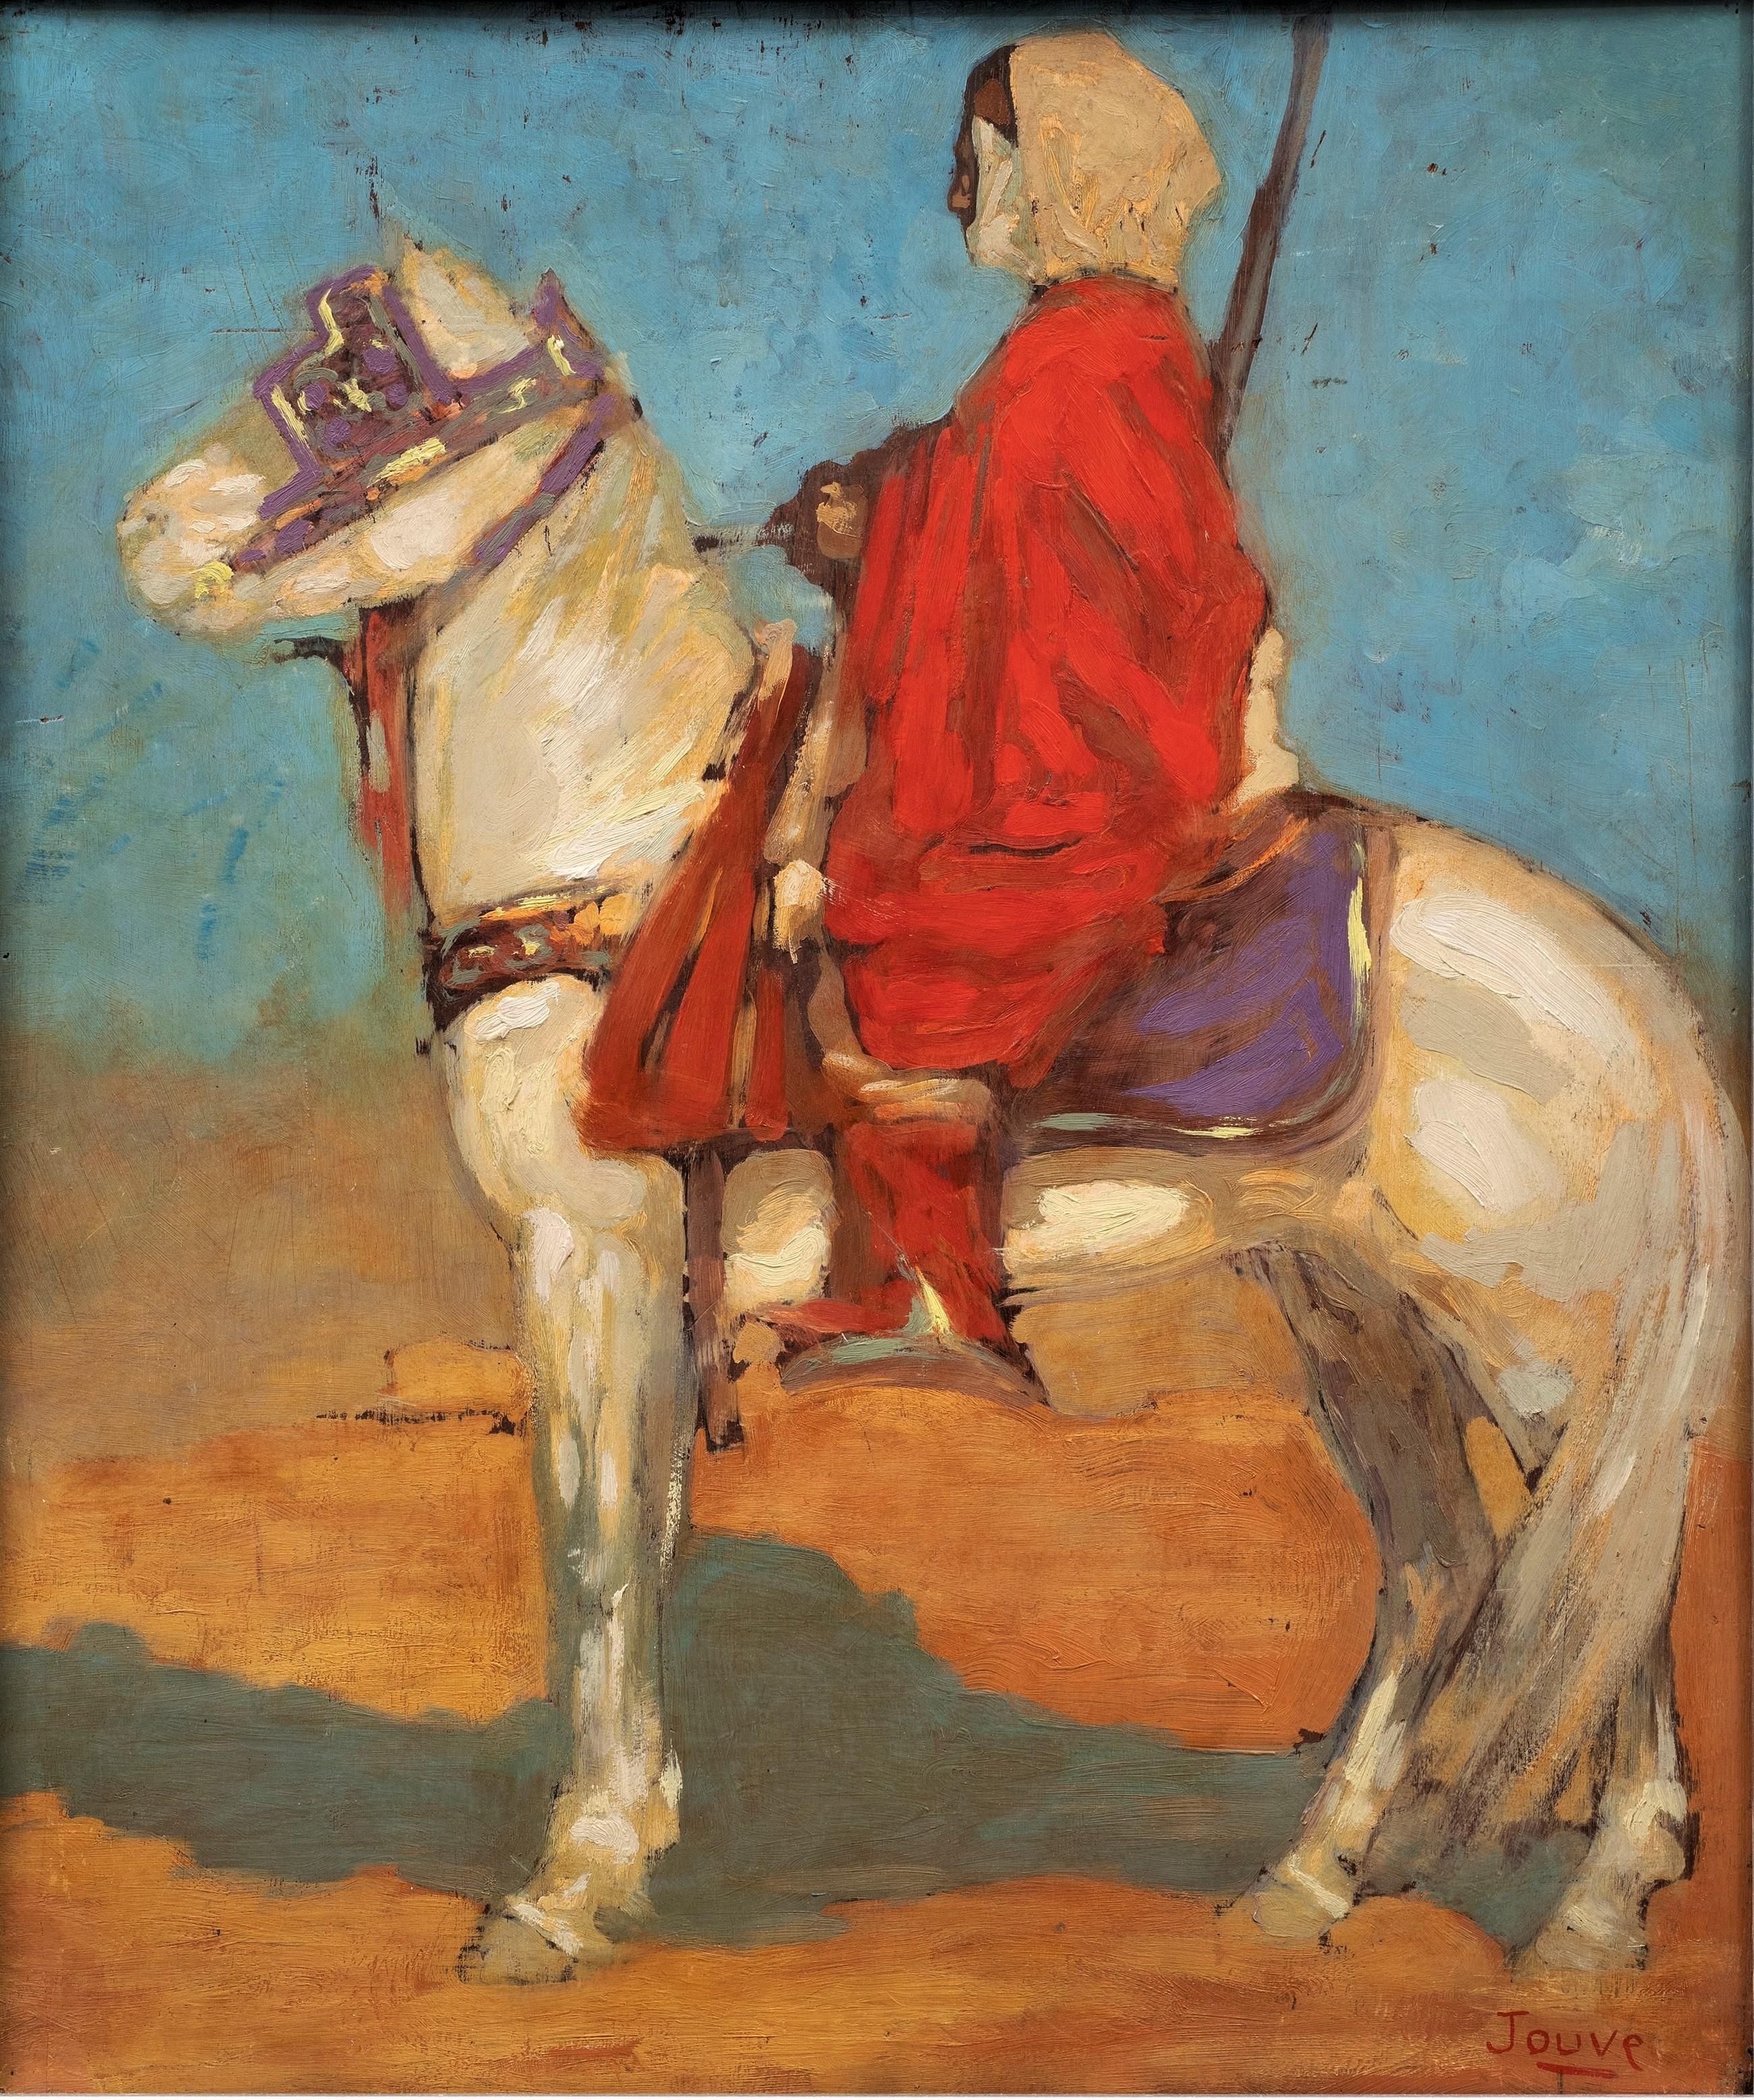 Peinture orientaliste Cavalier touareg dans le désert, 1908 par Paul Jouve - Painting de Pierre-Paul Jouve